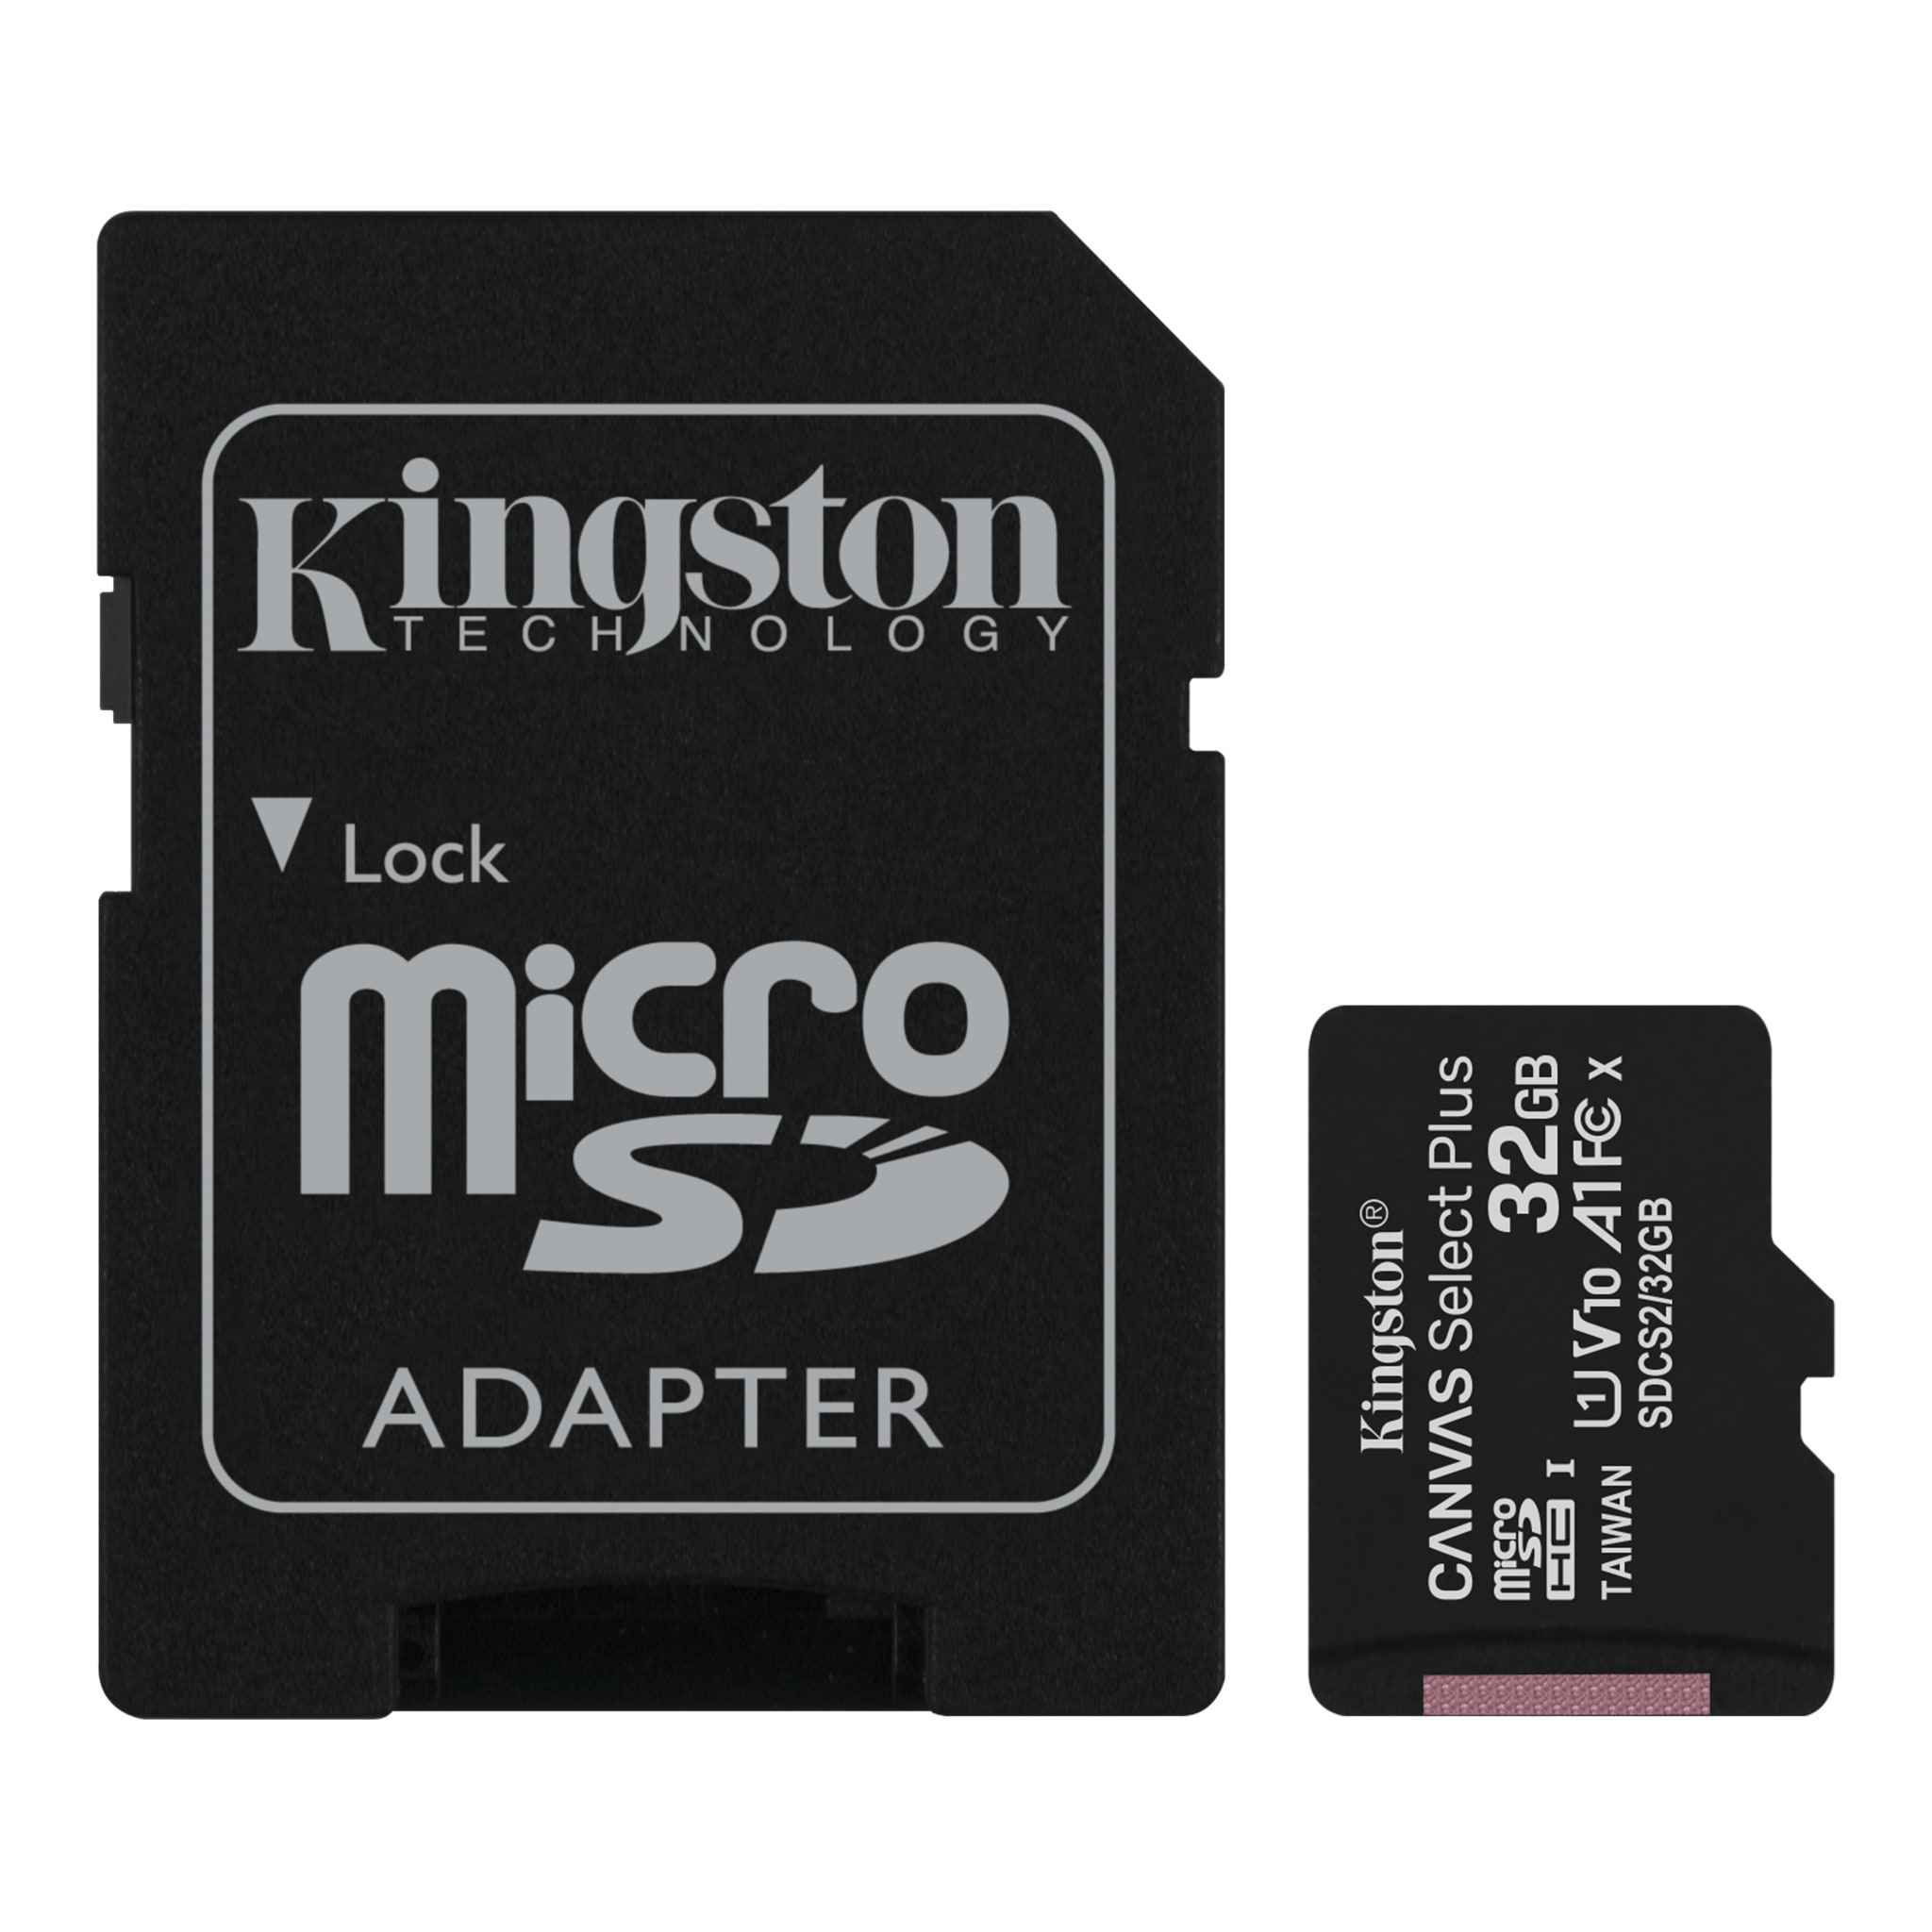 Kingston Canvas Select Plus 32 GB  100MB Sd Kart  Canvas Select Plus microSD Hafıza Kartı  Kingston Canvas Select Plus microSD kartı, Android cihazlarla uyumludur ve A1 sınıfı performans ile tasarlanmıştır. Uygulamaların daha hızlı yüklenmesini ve görüntülerin ve videoların çekilmesi için yüksek hızlarda ve 512GB1’a varan birden fazla kapasitede sunulmaktadır. Yüksek performans, hız ve dayanıklılığa sahip Canvas Select Plus microSD, yüksek çözünürlüklü fotoğrafların çekilmesi ve işlenmesinde ya da Full HD videoların çekilmesi ve düzenlenmesinde güvenilirlik sağlayacak şekilde tasarlanmıştır. Kingston Canvas kartlarının, en zorlu ortamlara ve koşullara karşı dayanıklılığı test edilmiştir. Yani fotoğraflarınızın, videolarınızın ya da diğer dosyalarınızın güvende olacağından emin olarak istediğiniz yere götürebilirsiniz. Ömür boyu garantili olarak sunulmaktadır. 